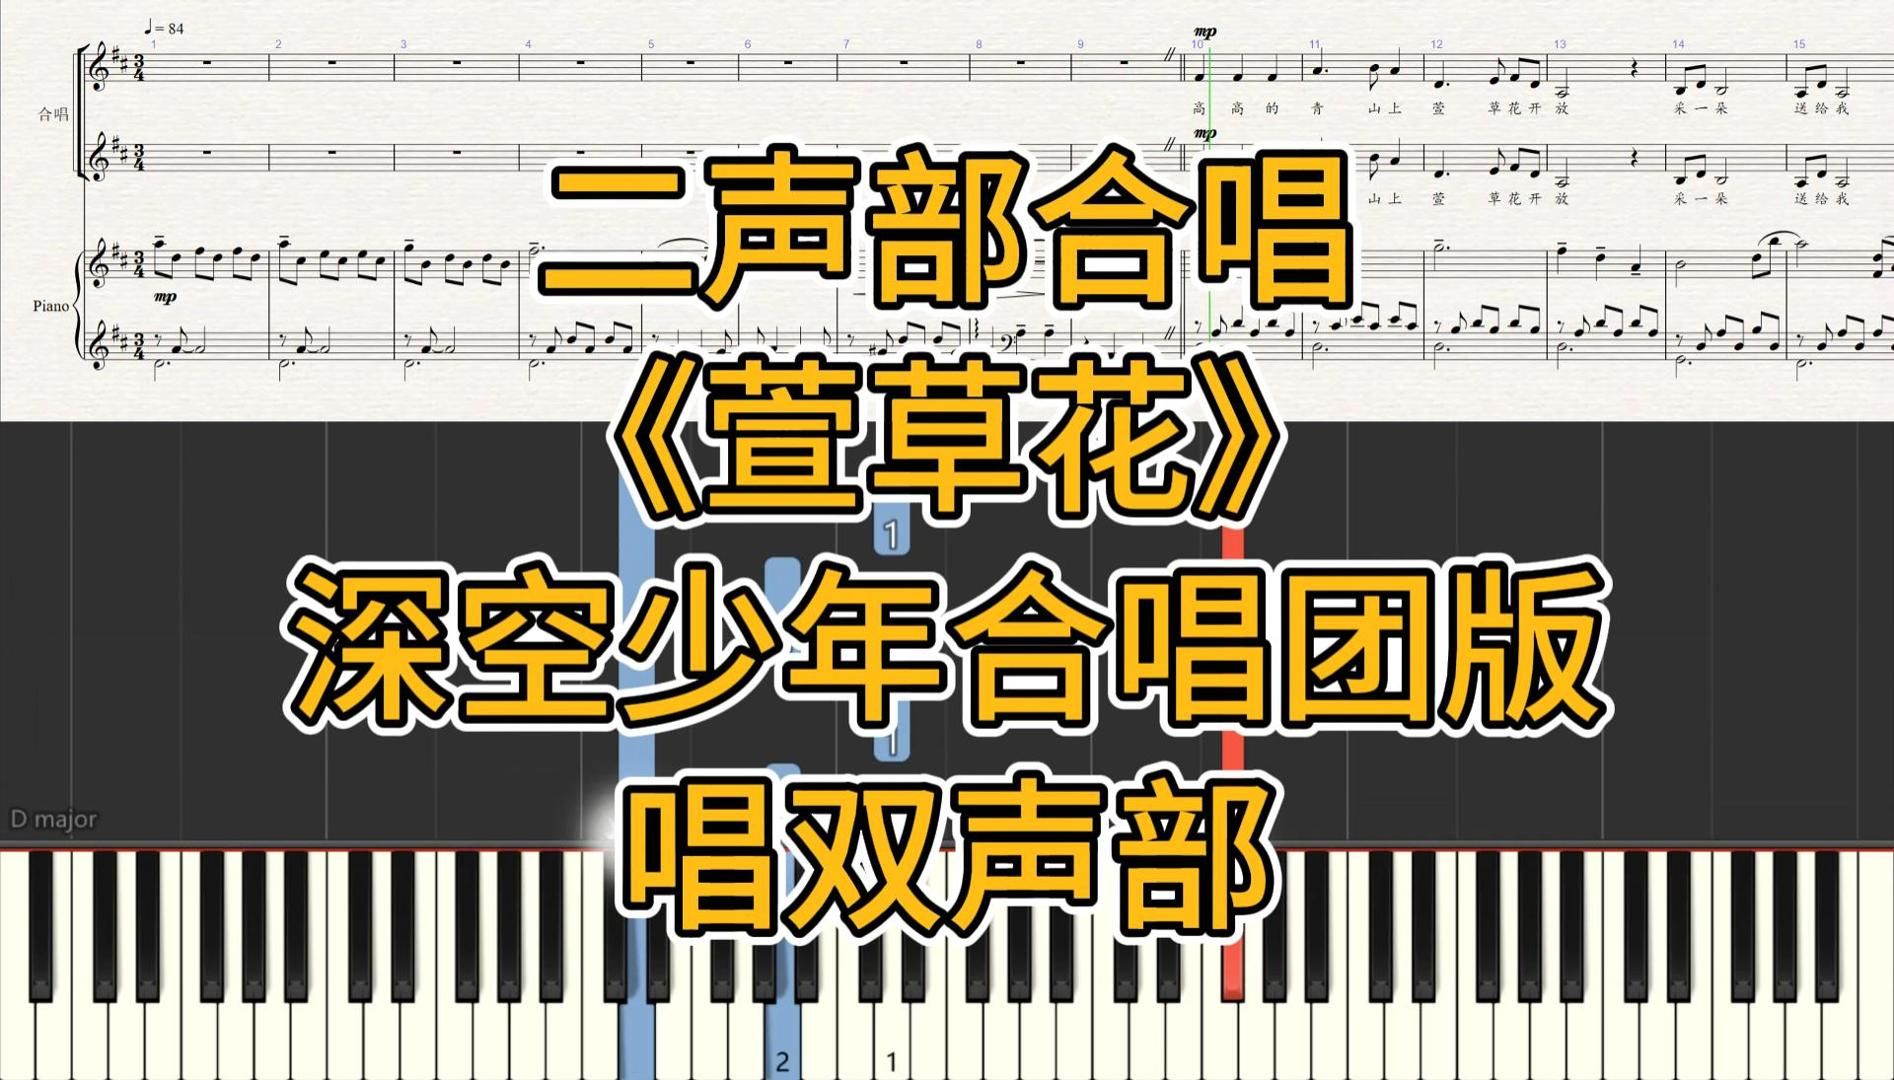 【钢琴谱】萱草花 二声部合唱 伴奏音频 深空少年合唱团版 带指法